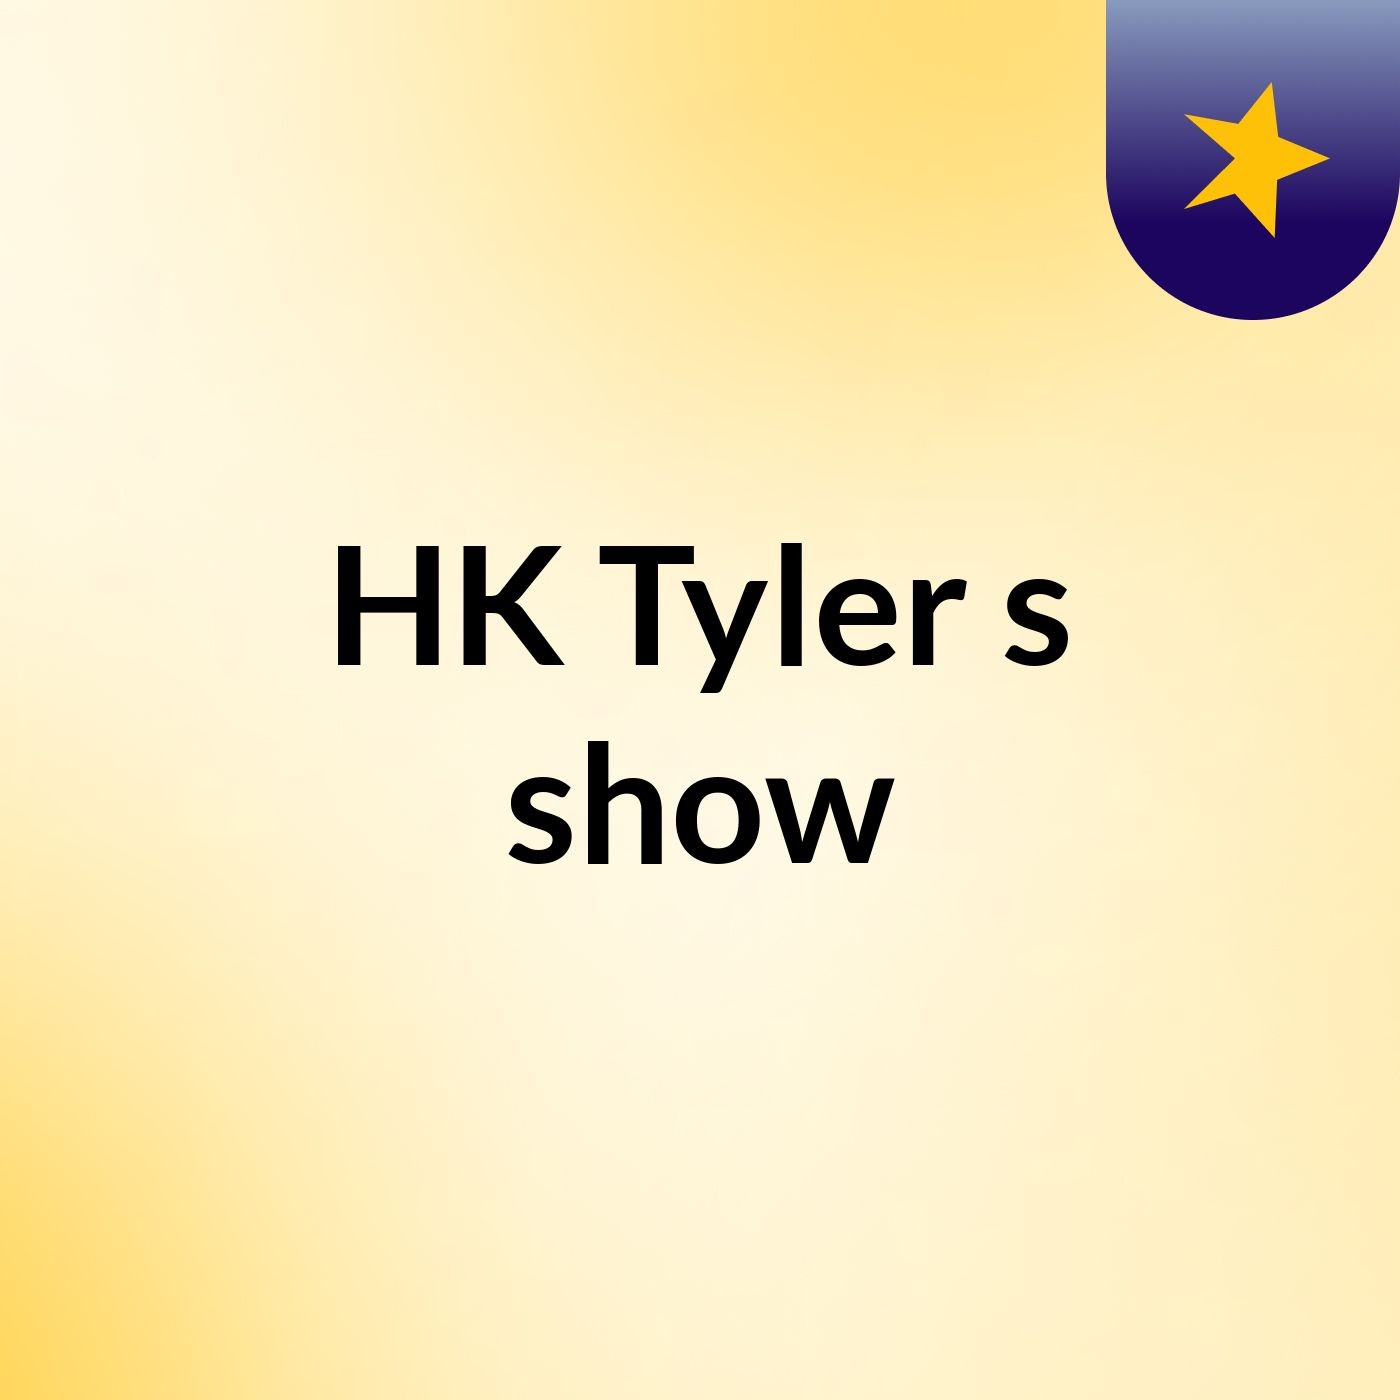 HK Tyler's show